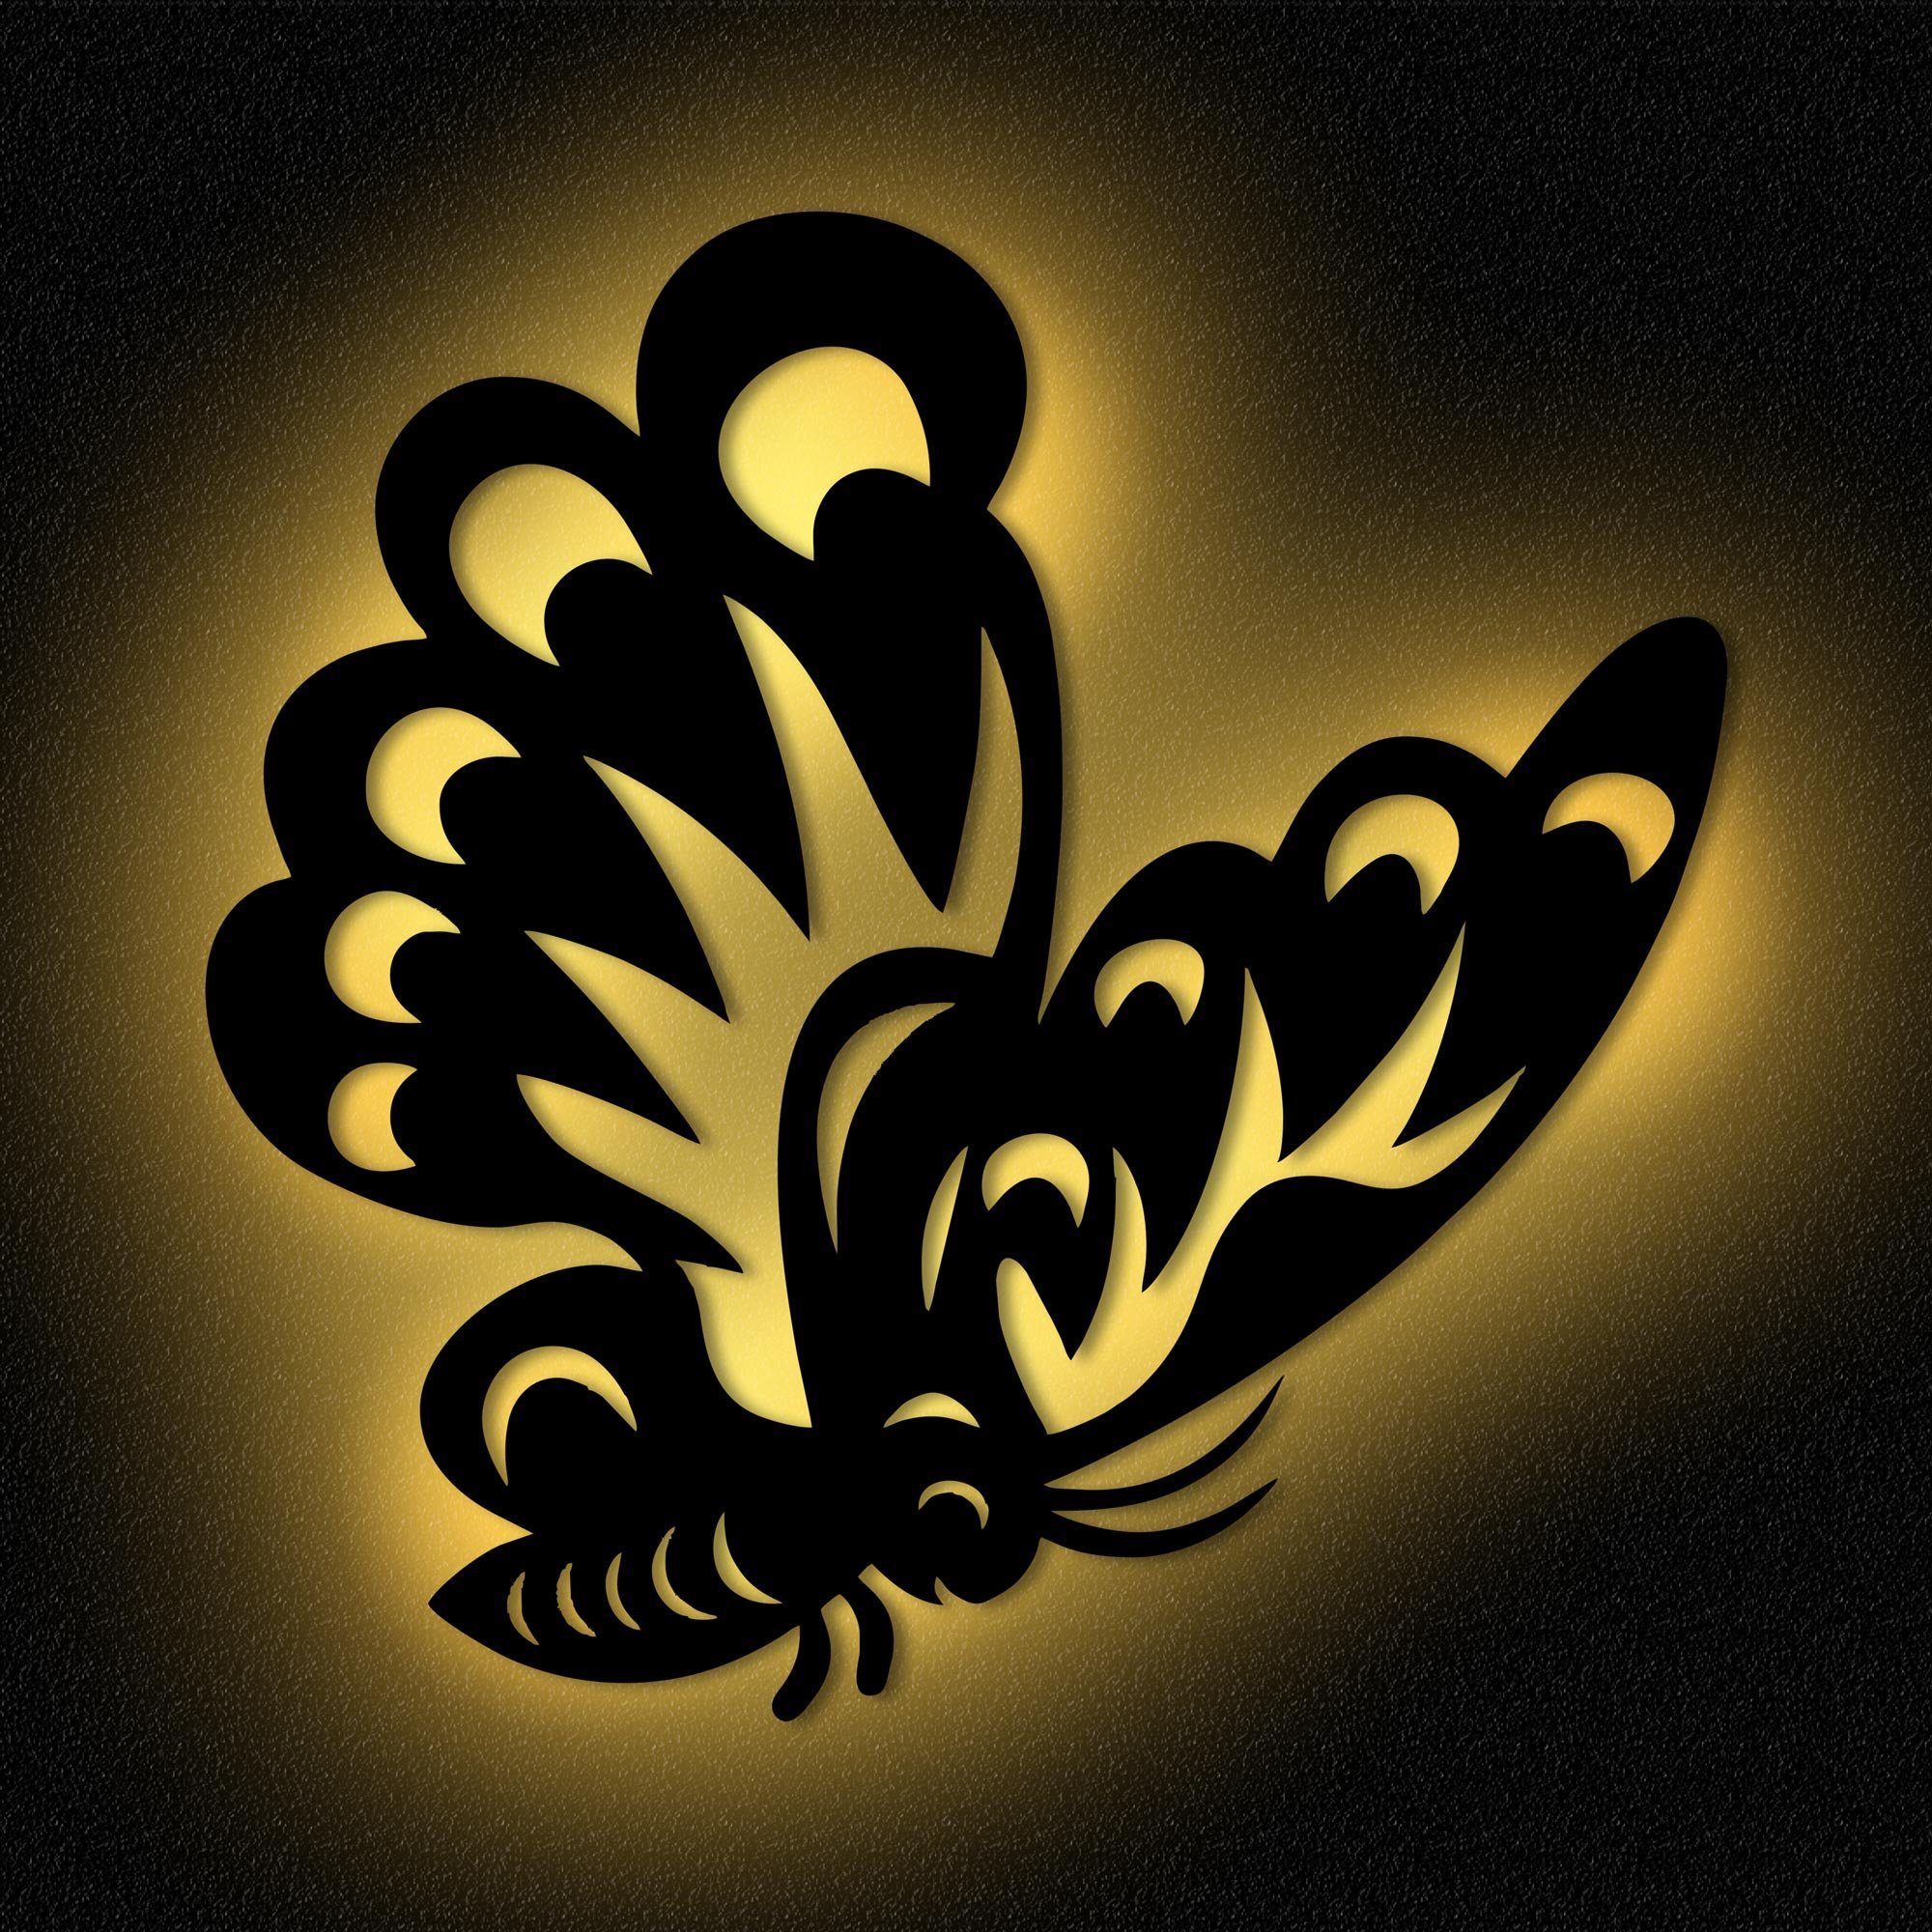 Namofactur LED Nachtlicht Schmetterling Nachtlicht Kinder Wandlampe Kinderzimmer I MDF Holz, LED fest integriert, Warmweiß | Nachtlichter